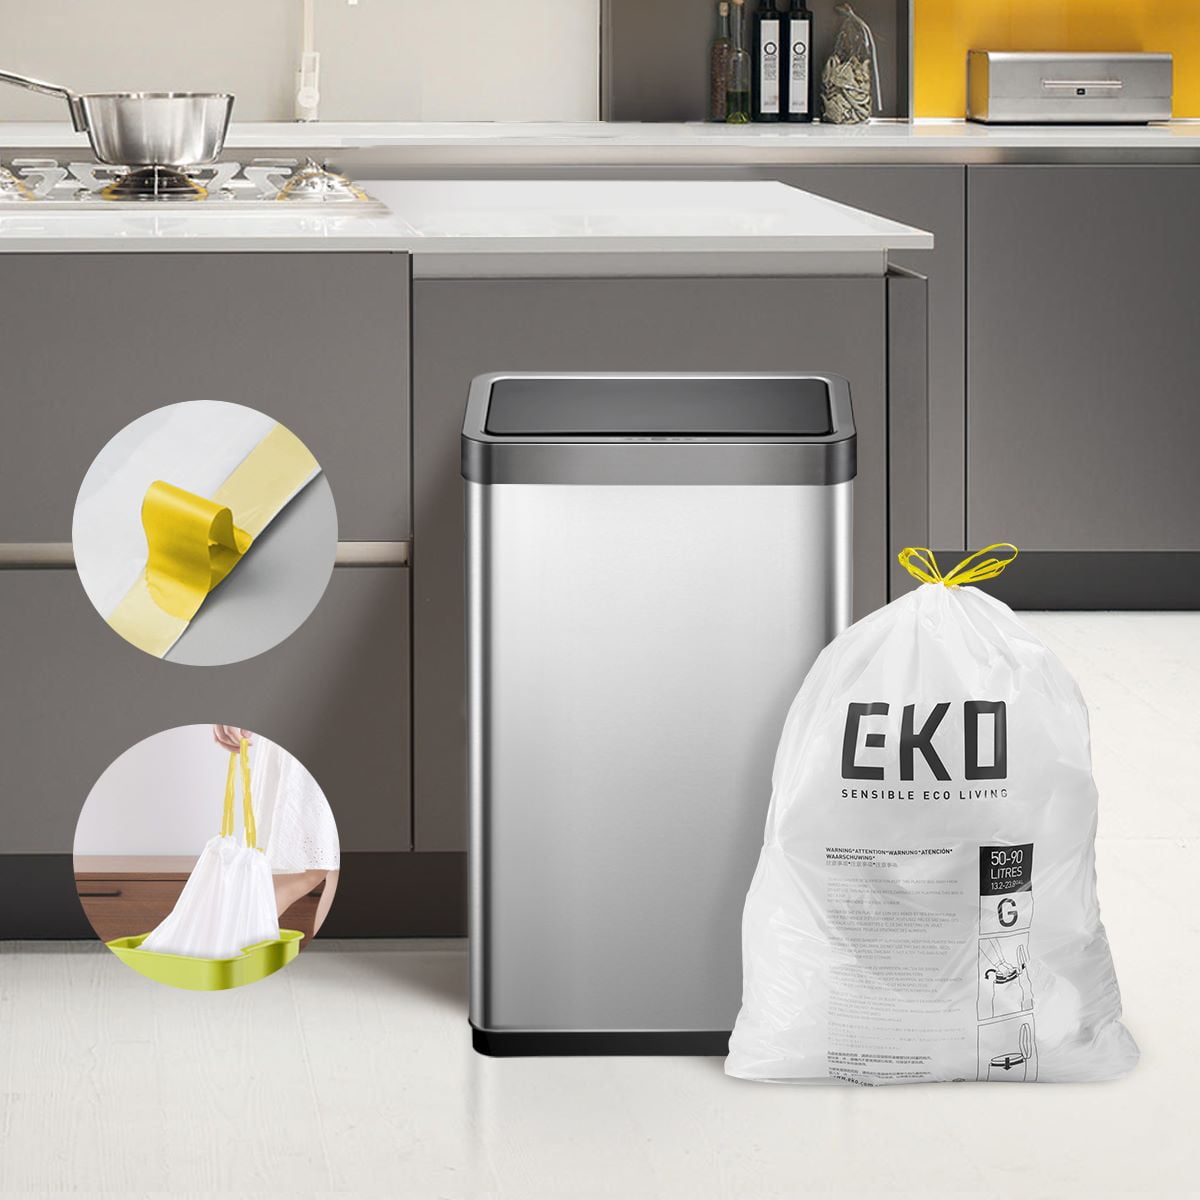 Eko 60pk Kitchen Trash Bags : Target